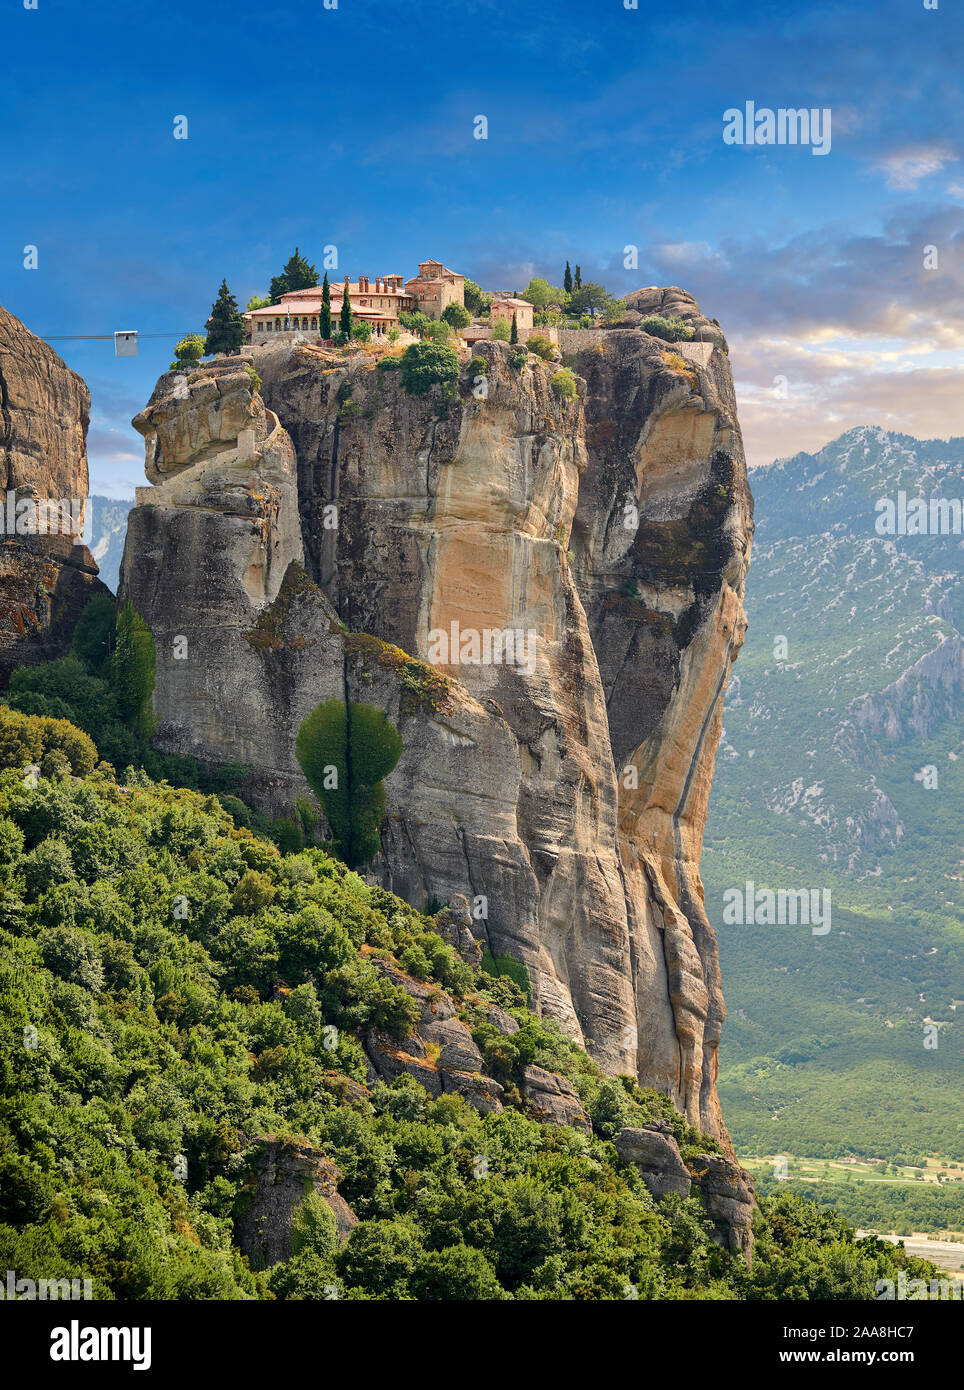 Les Météores médiévale Monastère de la Sainte Trinité en haut d'un pilier dans la roche des montagnes Les Météores, Thessalie, Grèce Banque D'Images